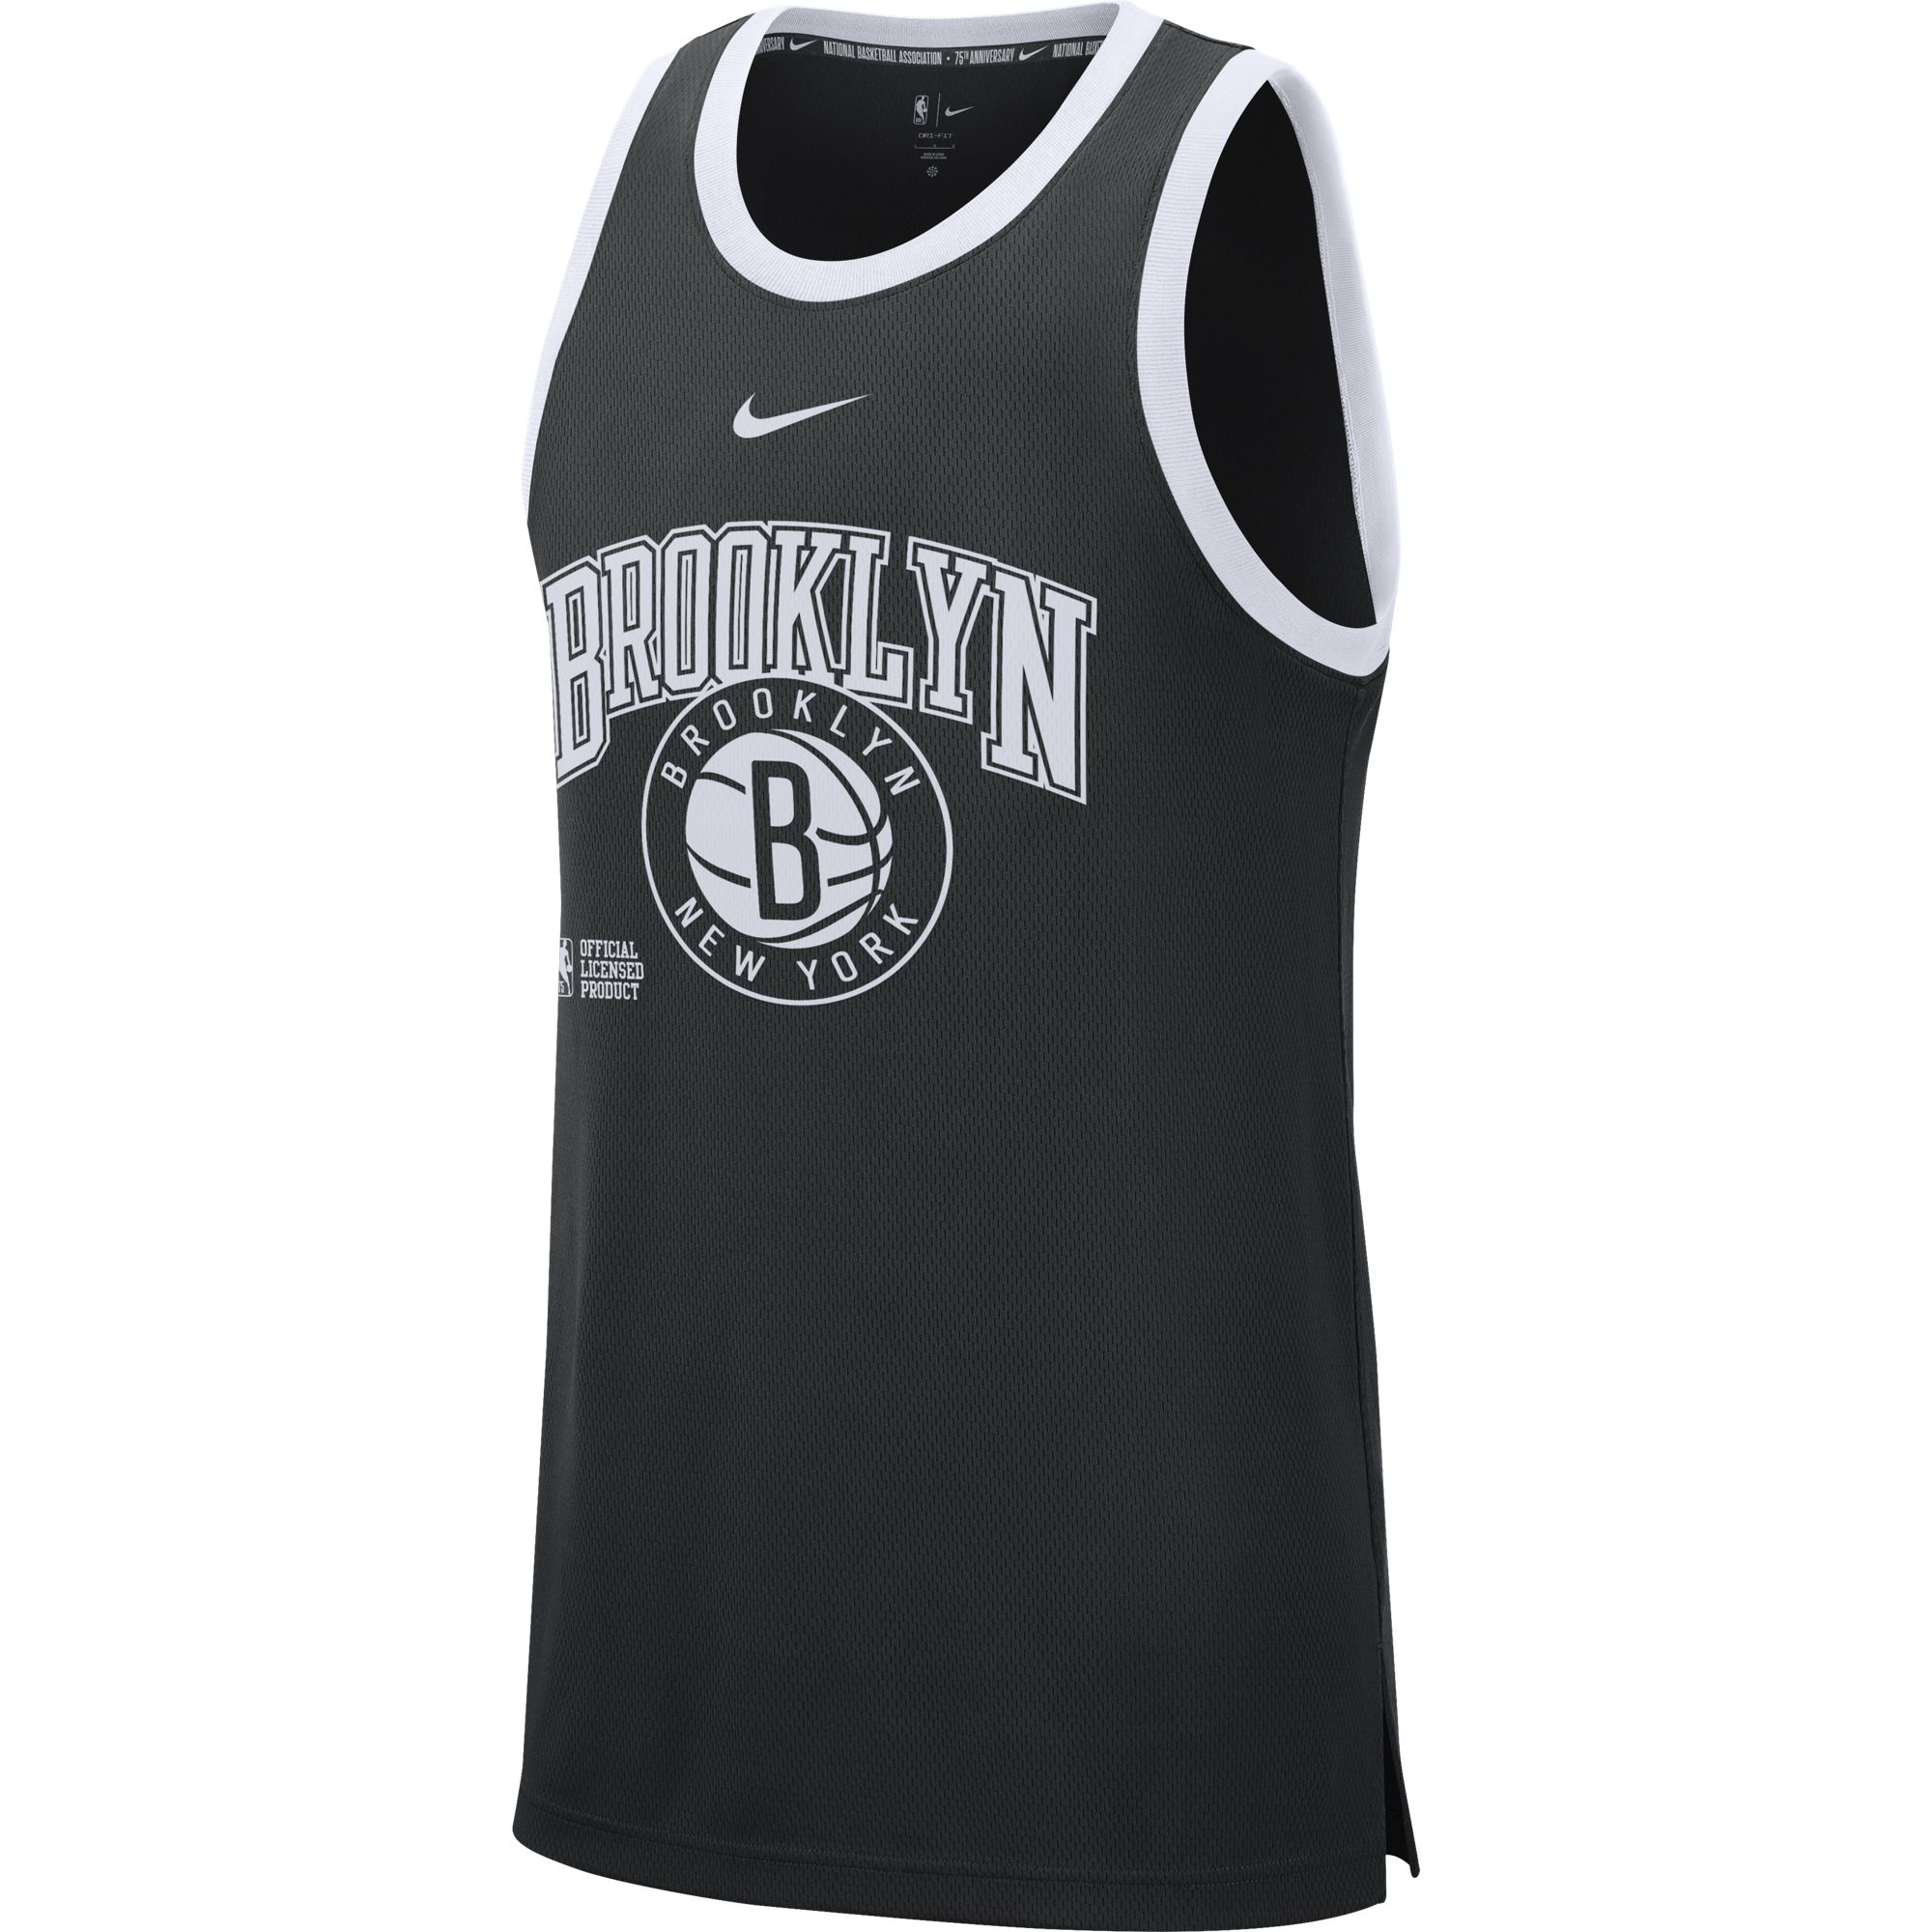 Джерси Nike Brooklyn Nets Courtside - картинка